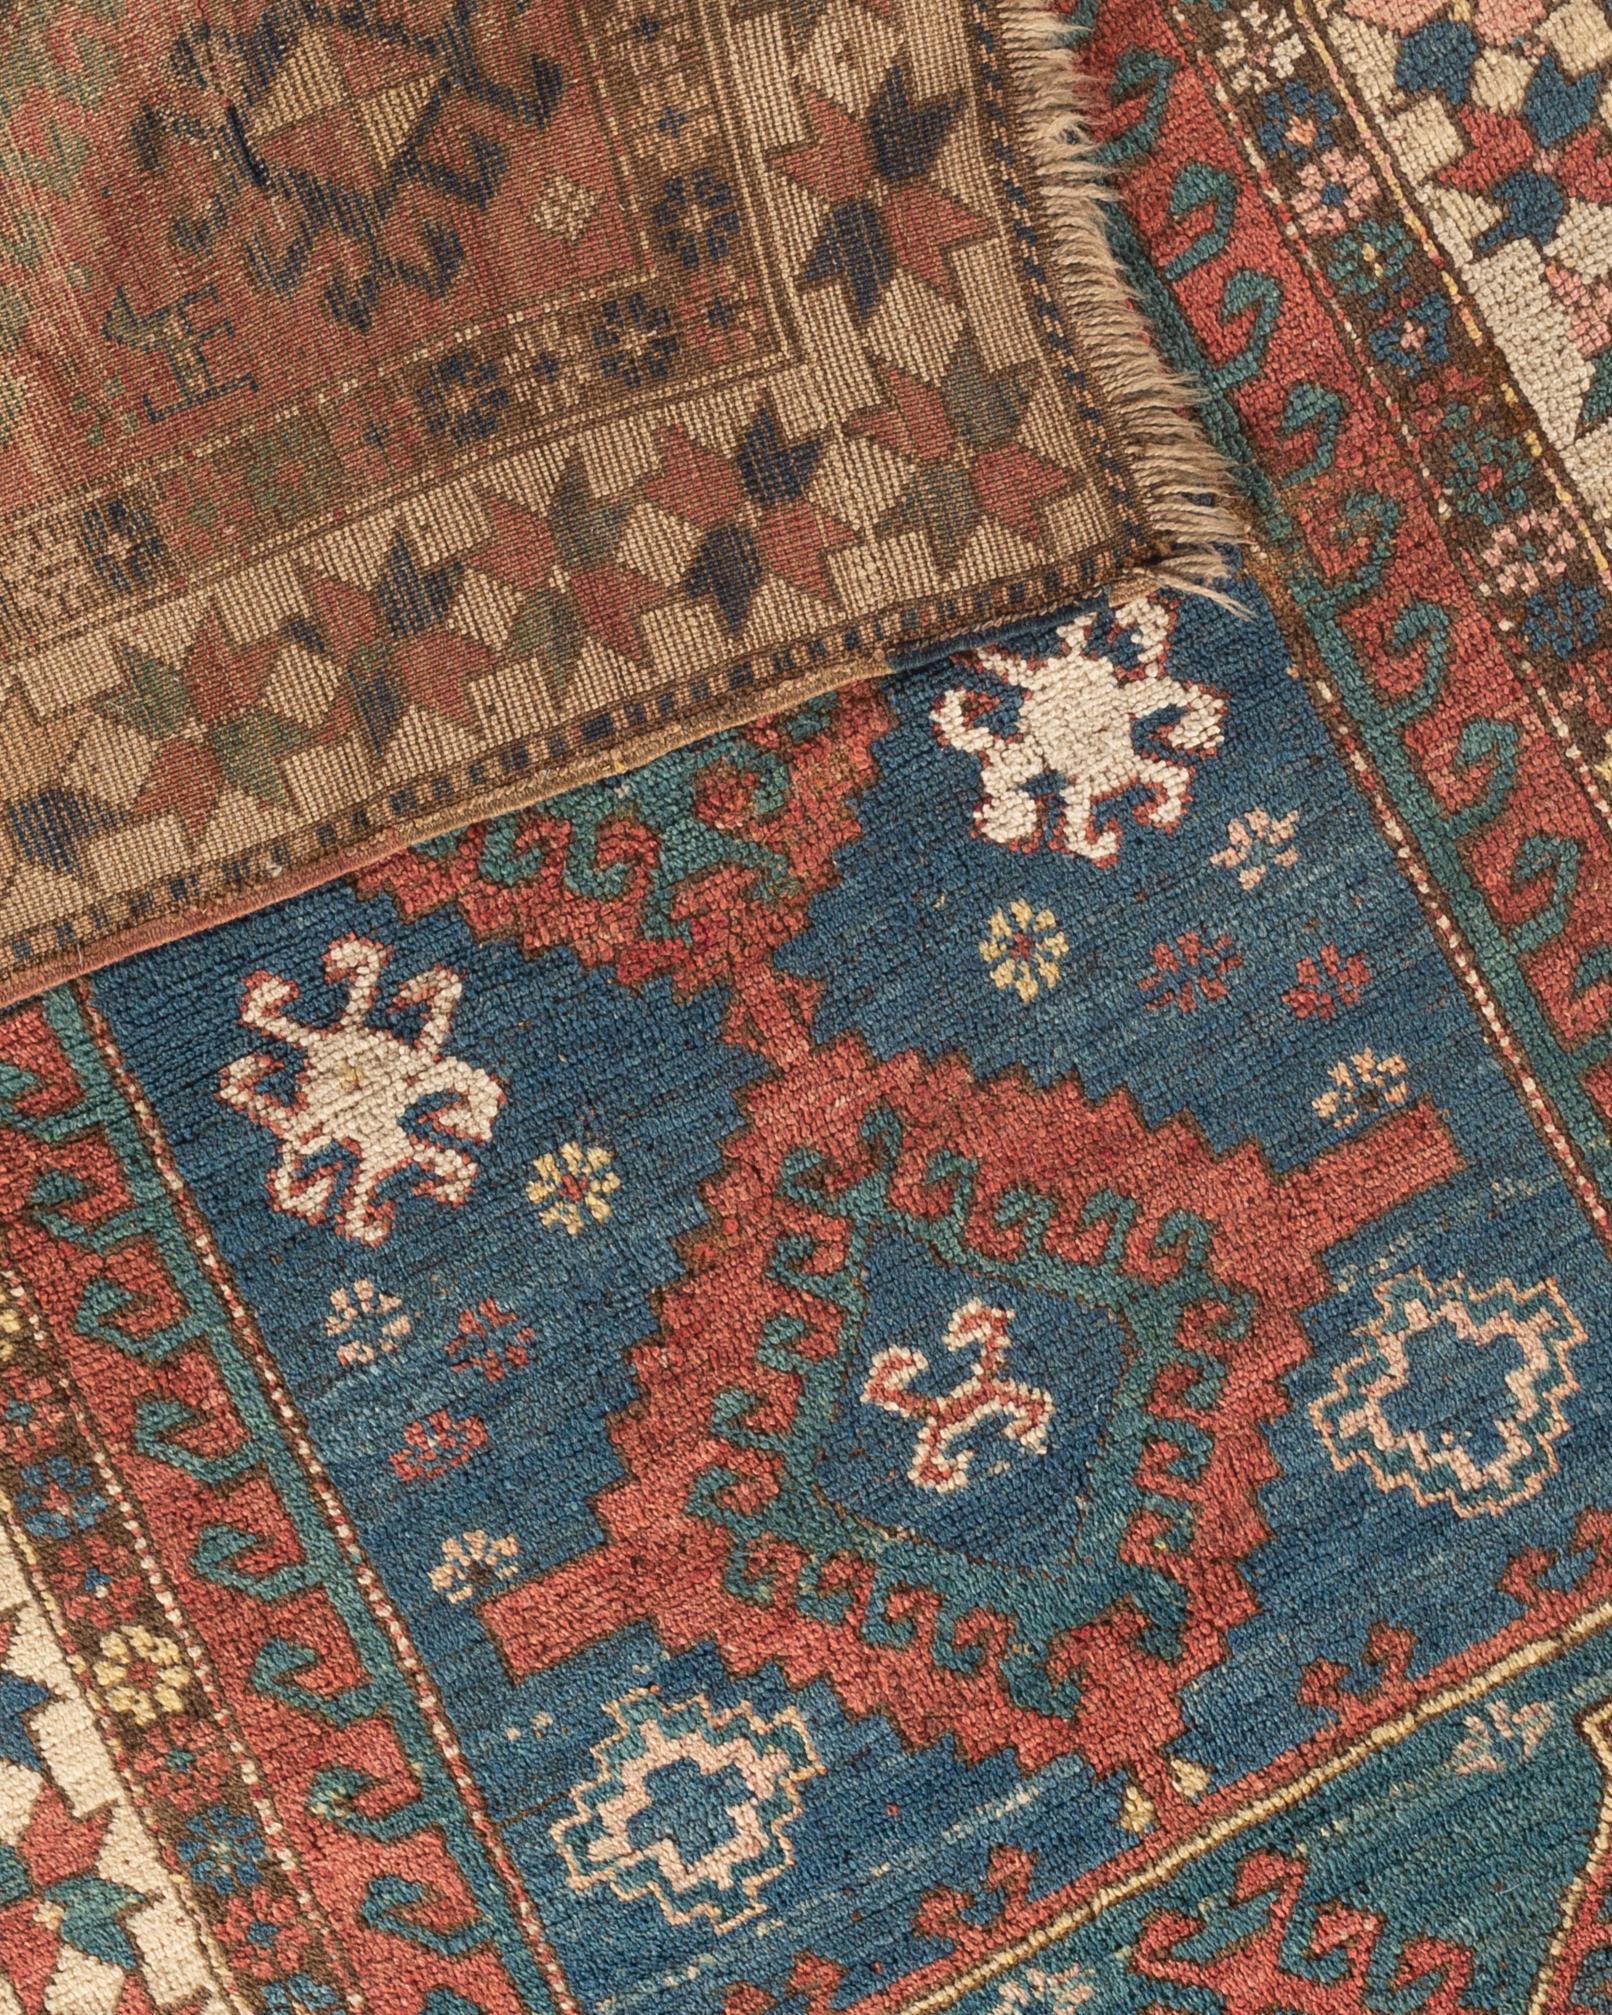 Antique Caucasian Kazak Rug, circa 1890 4' x 6'10 For Sale 1